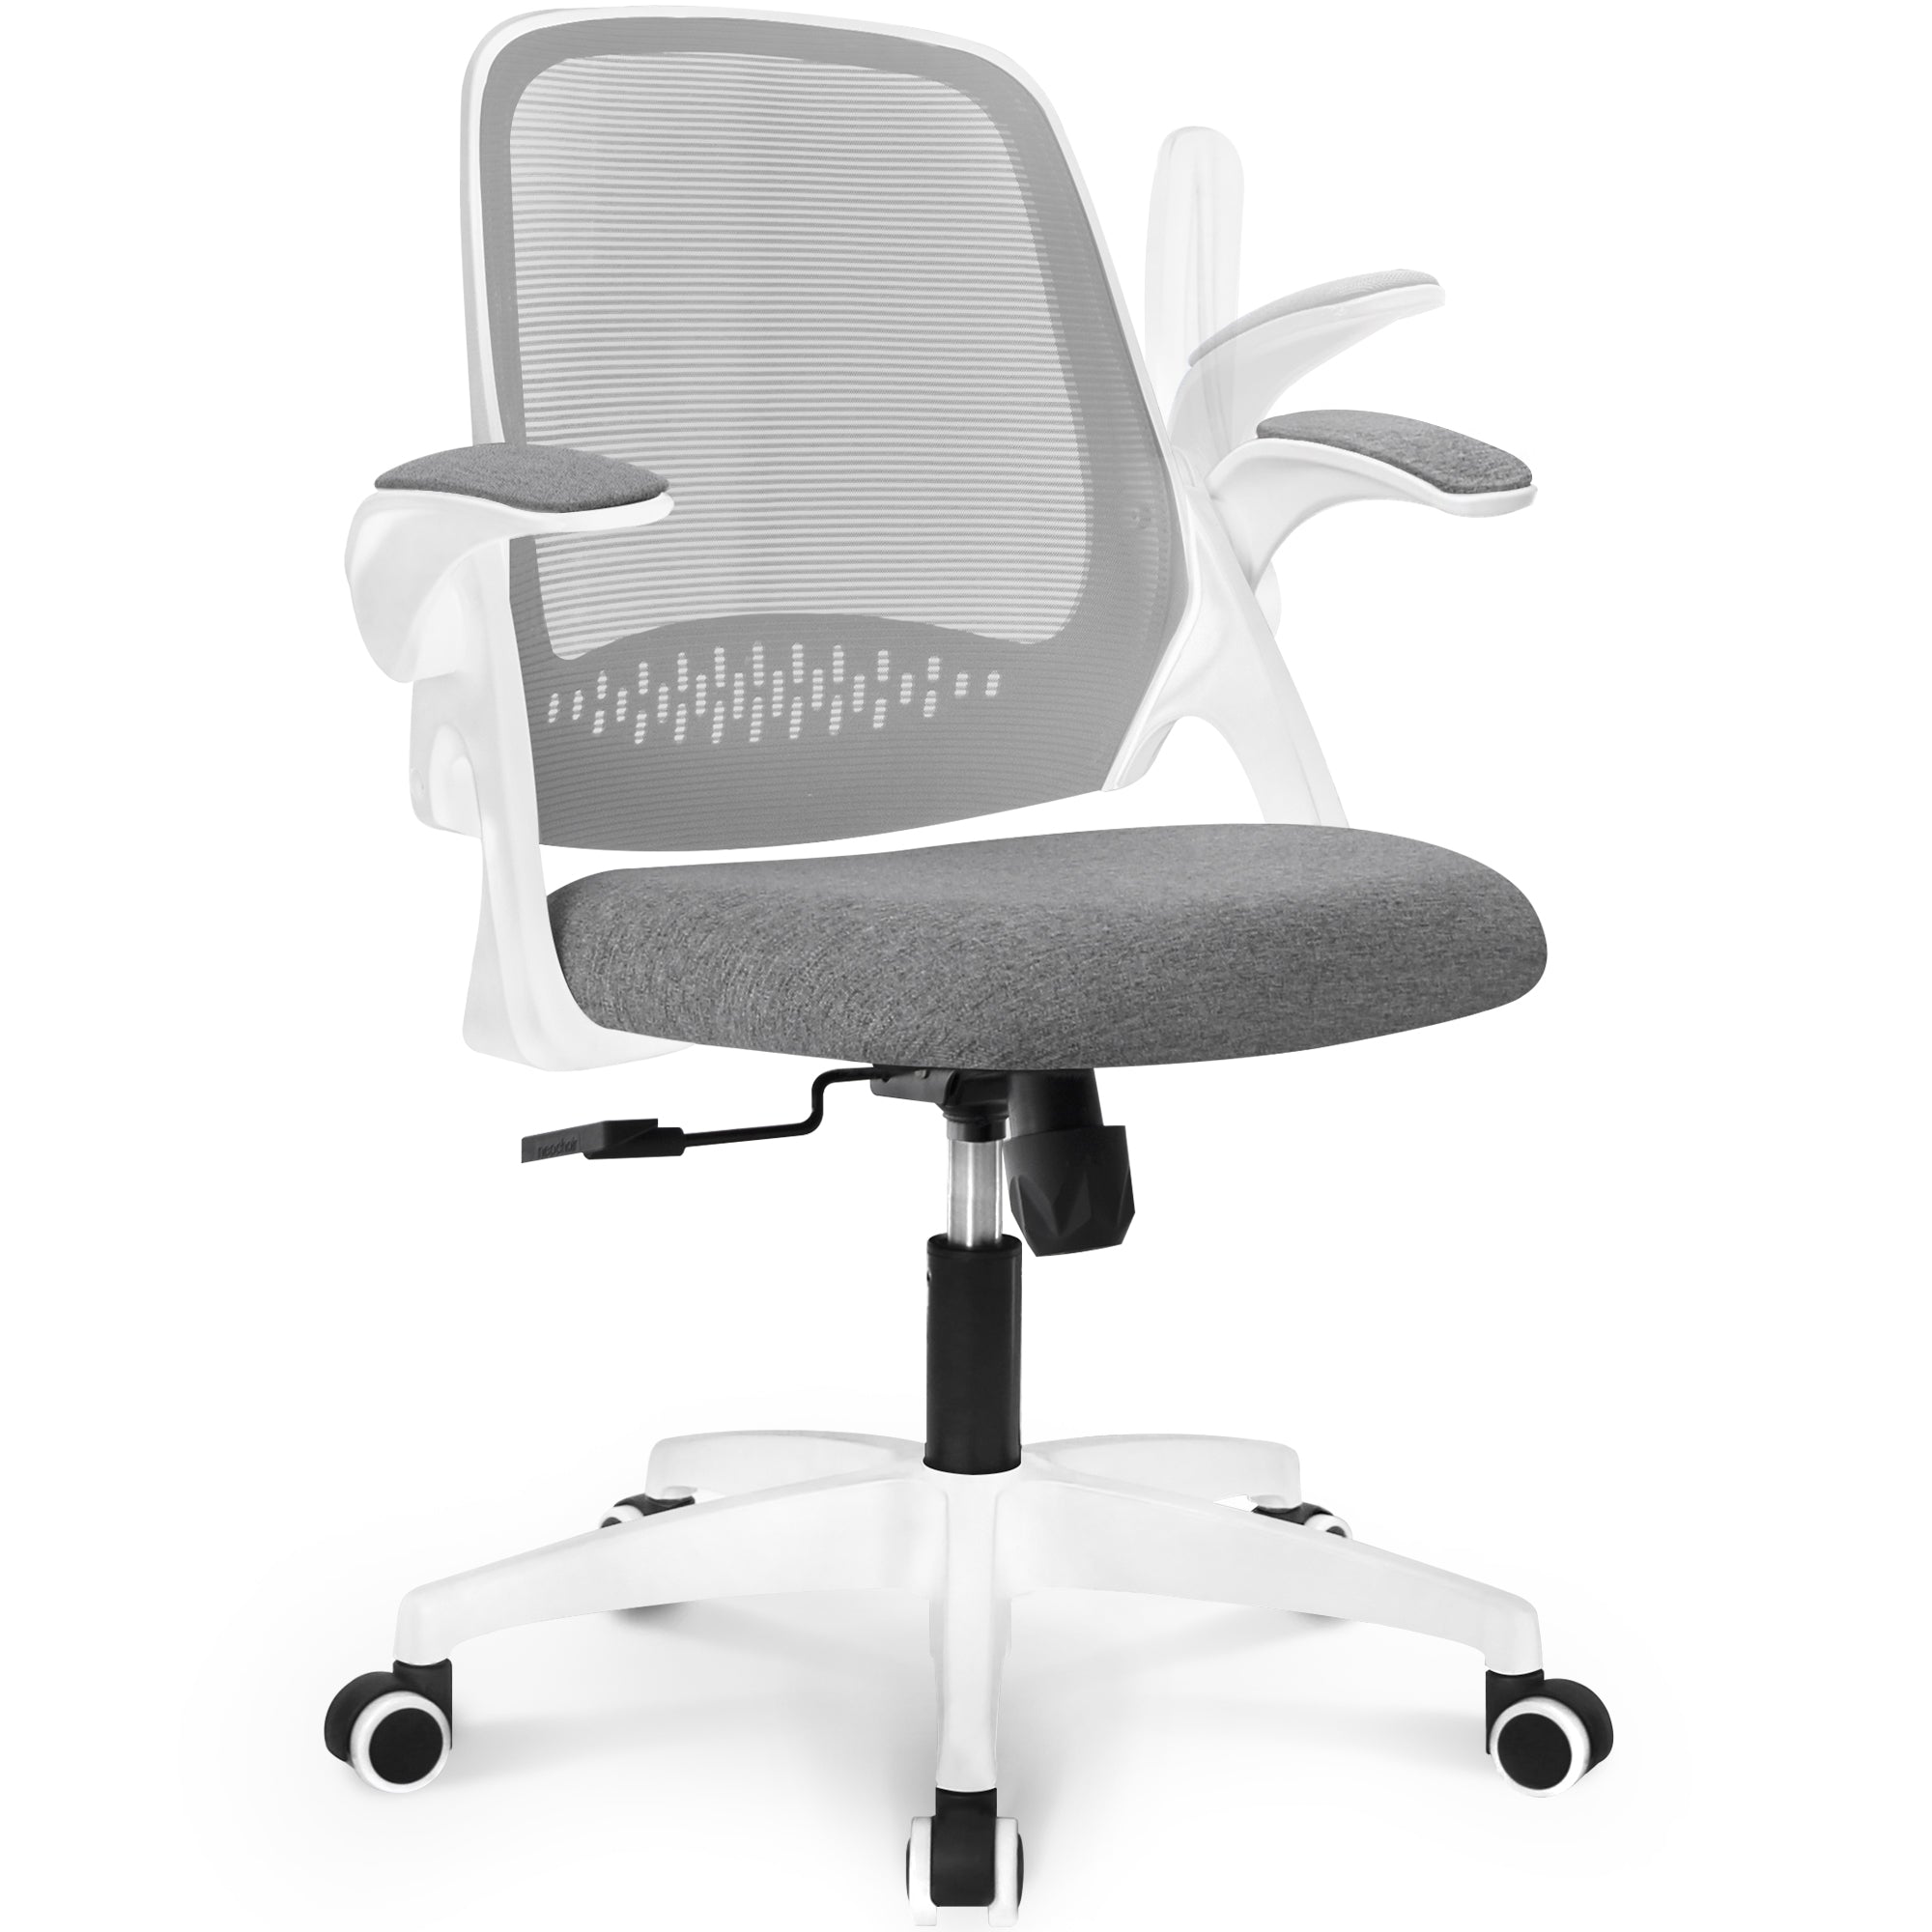 NEC オフィスチェア メッシュ デスクチェア 跳ね上げ式アームレスト 事務椅子 人間工学 PCチェア グレー